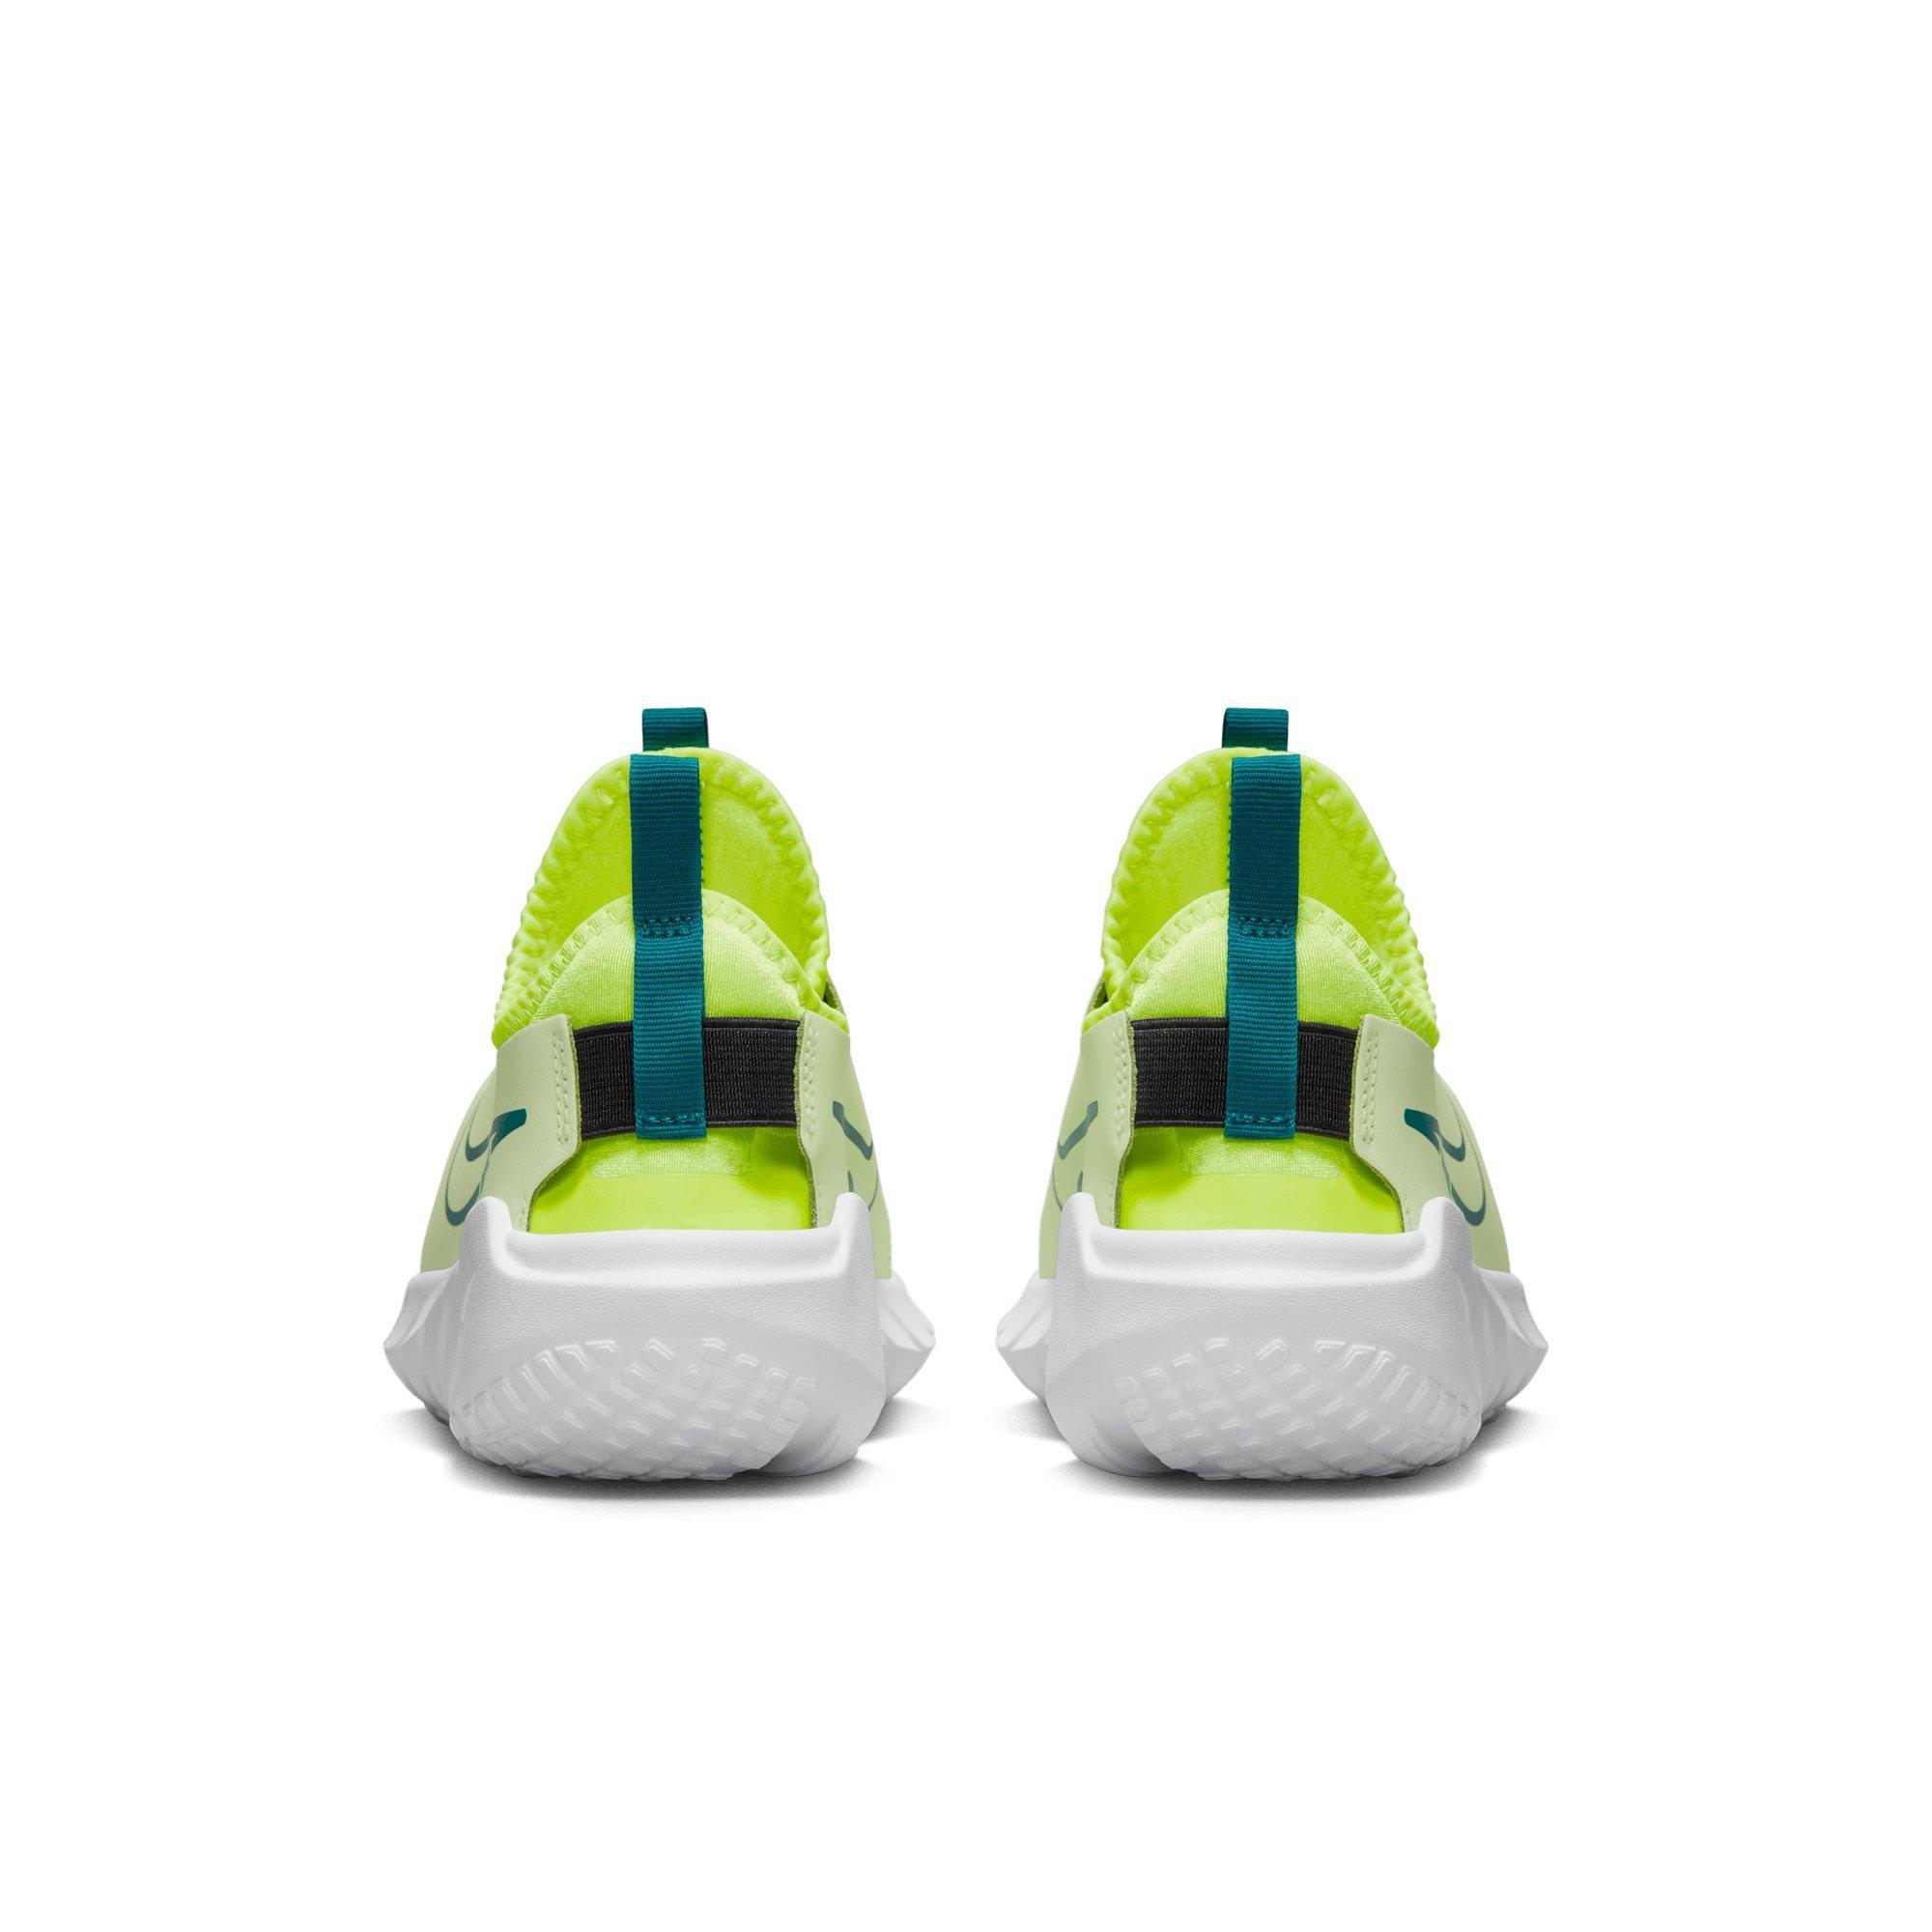 Nike Flex Runner "Barely Spruce/Volt/Black" Grade Boy's Running Shoe